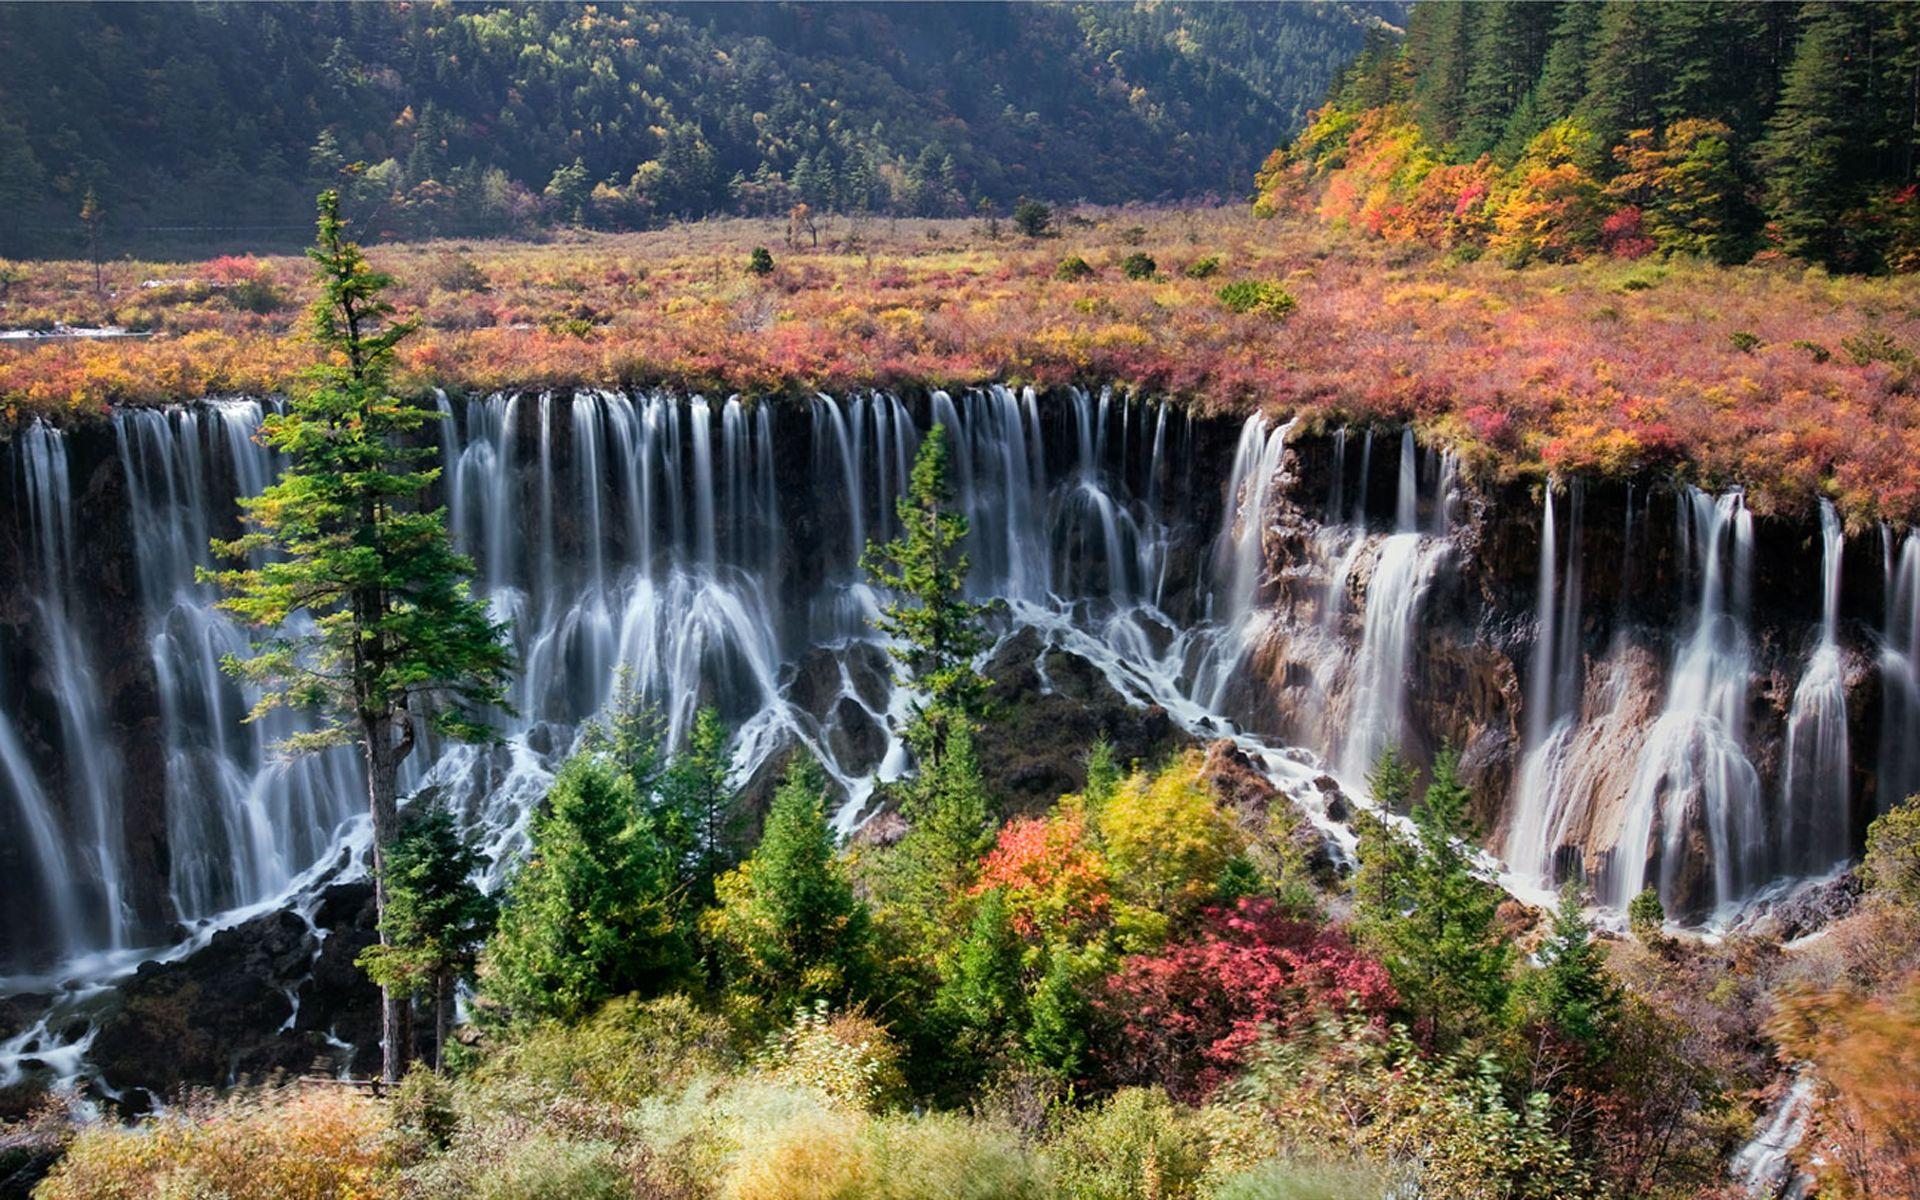 Jiuzhaigou Tibetan China Nuorilang Waterfall Is A Nature Reserve